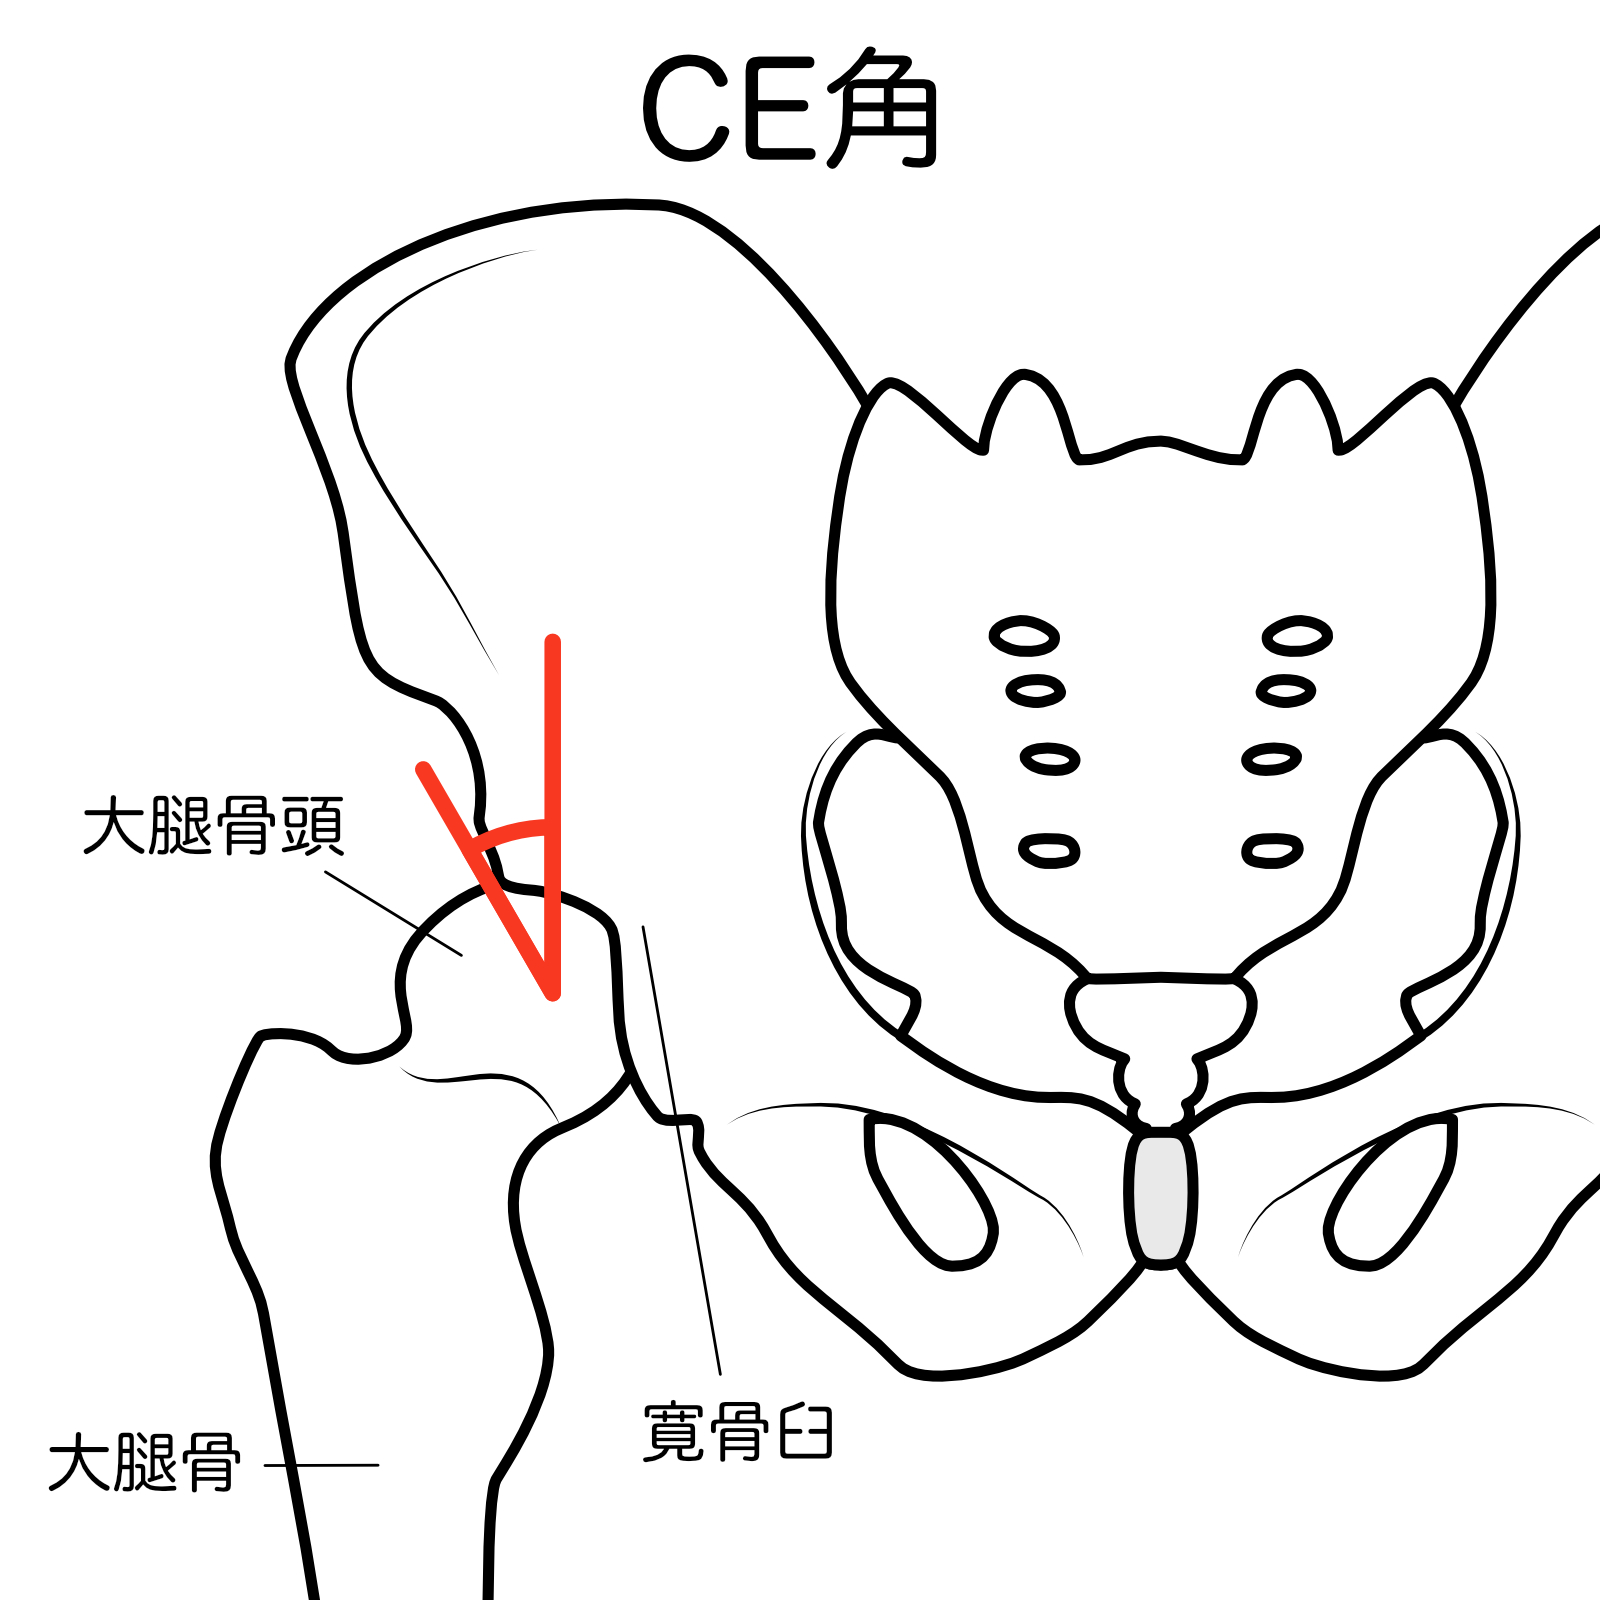 大腿骨CE角